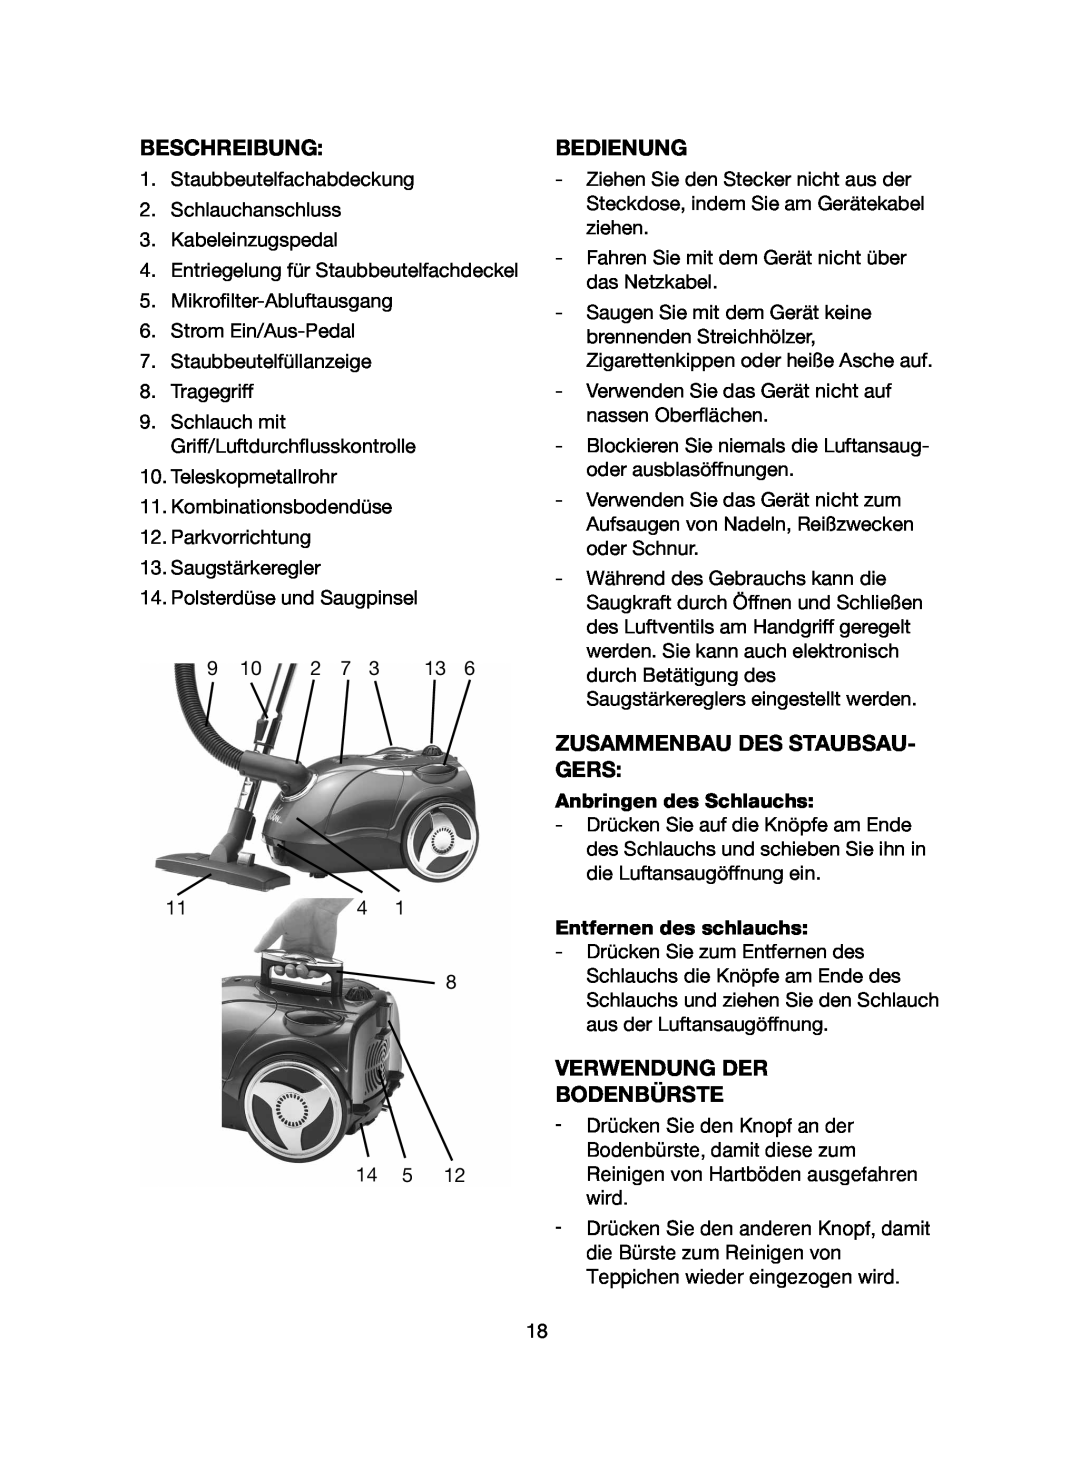 Melissa 640-107 manual Beschreibung, Bedienung, Zusammenbau Des Staubsau- Gers, Verwendung Der Bodenbürste 